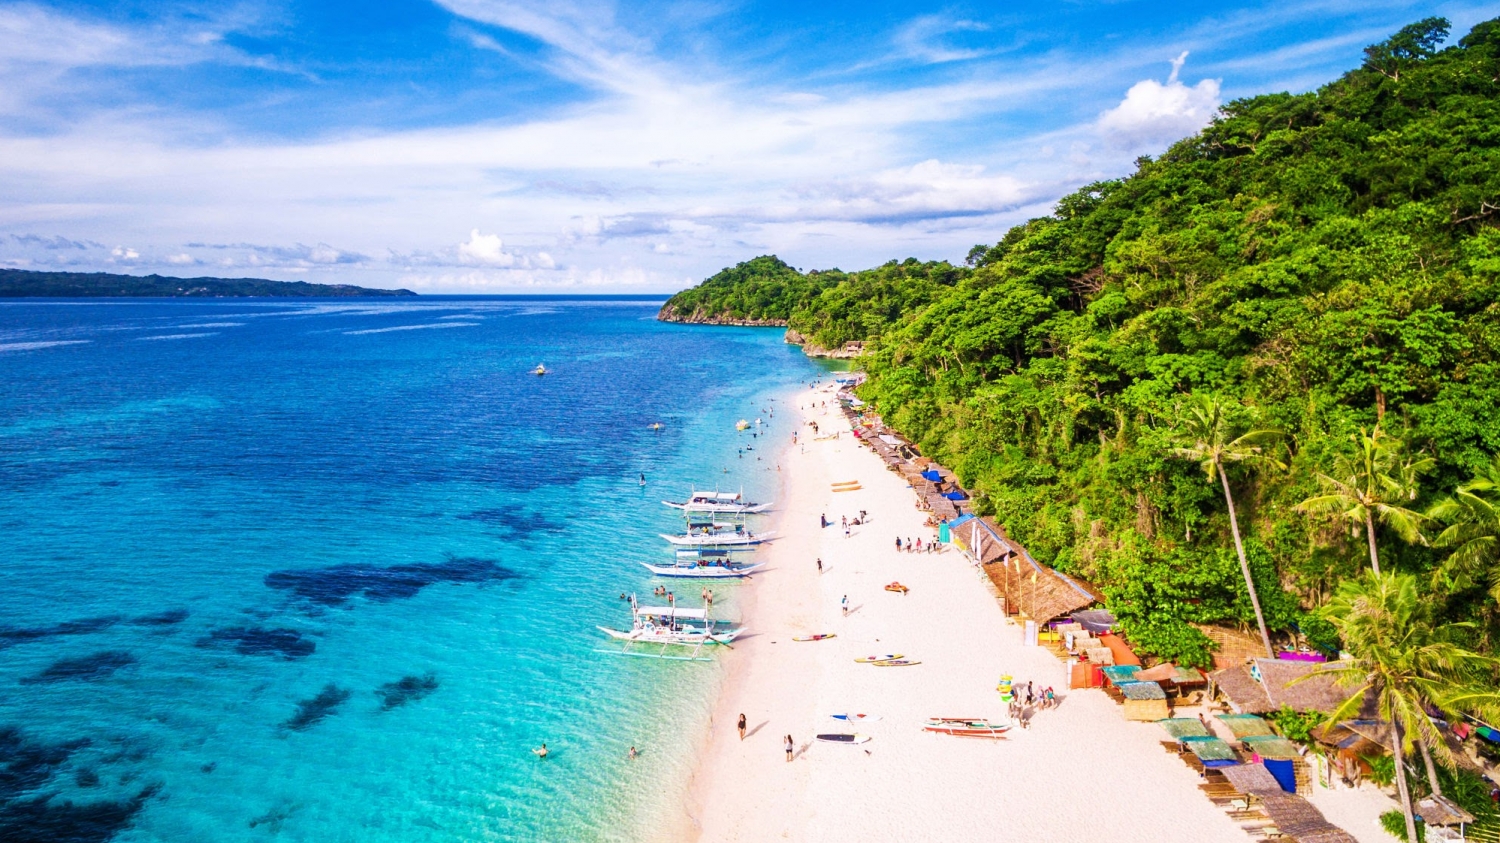 Quyến rũ “bãi biển thiên đường” Boracay